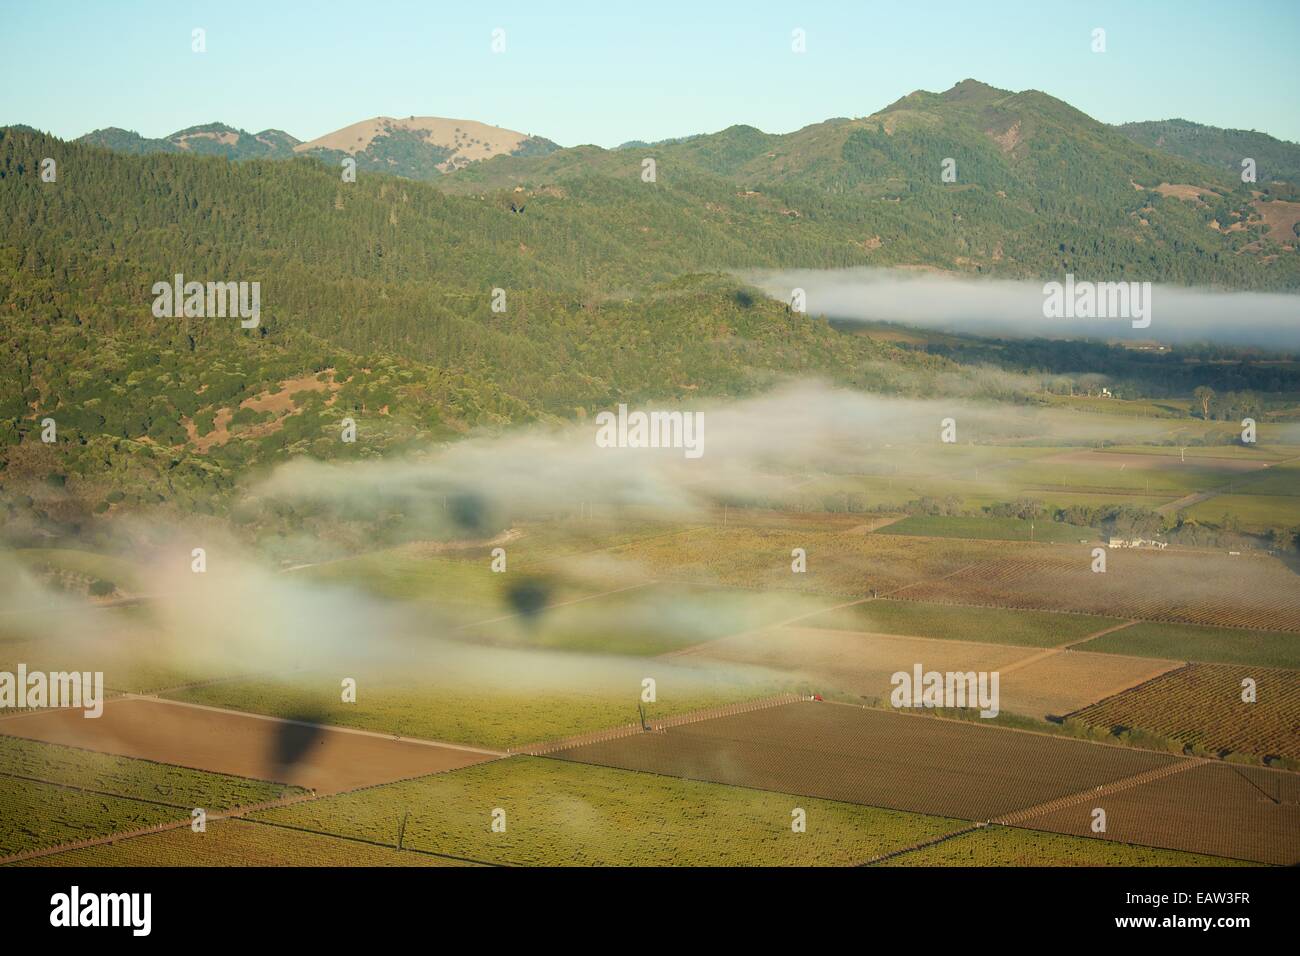 La montgolfière dans la Napa Valley, Californie vin célèbre du pays. Banque D'Images